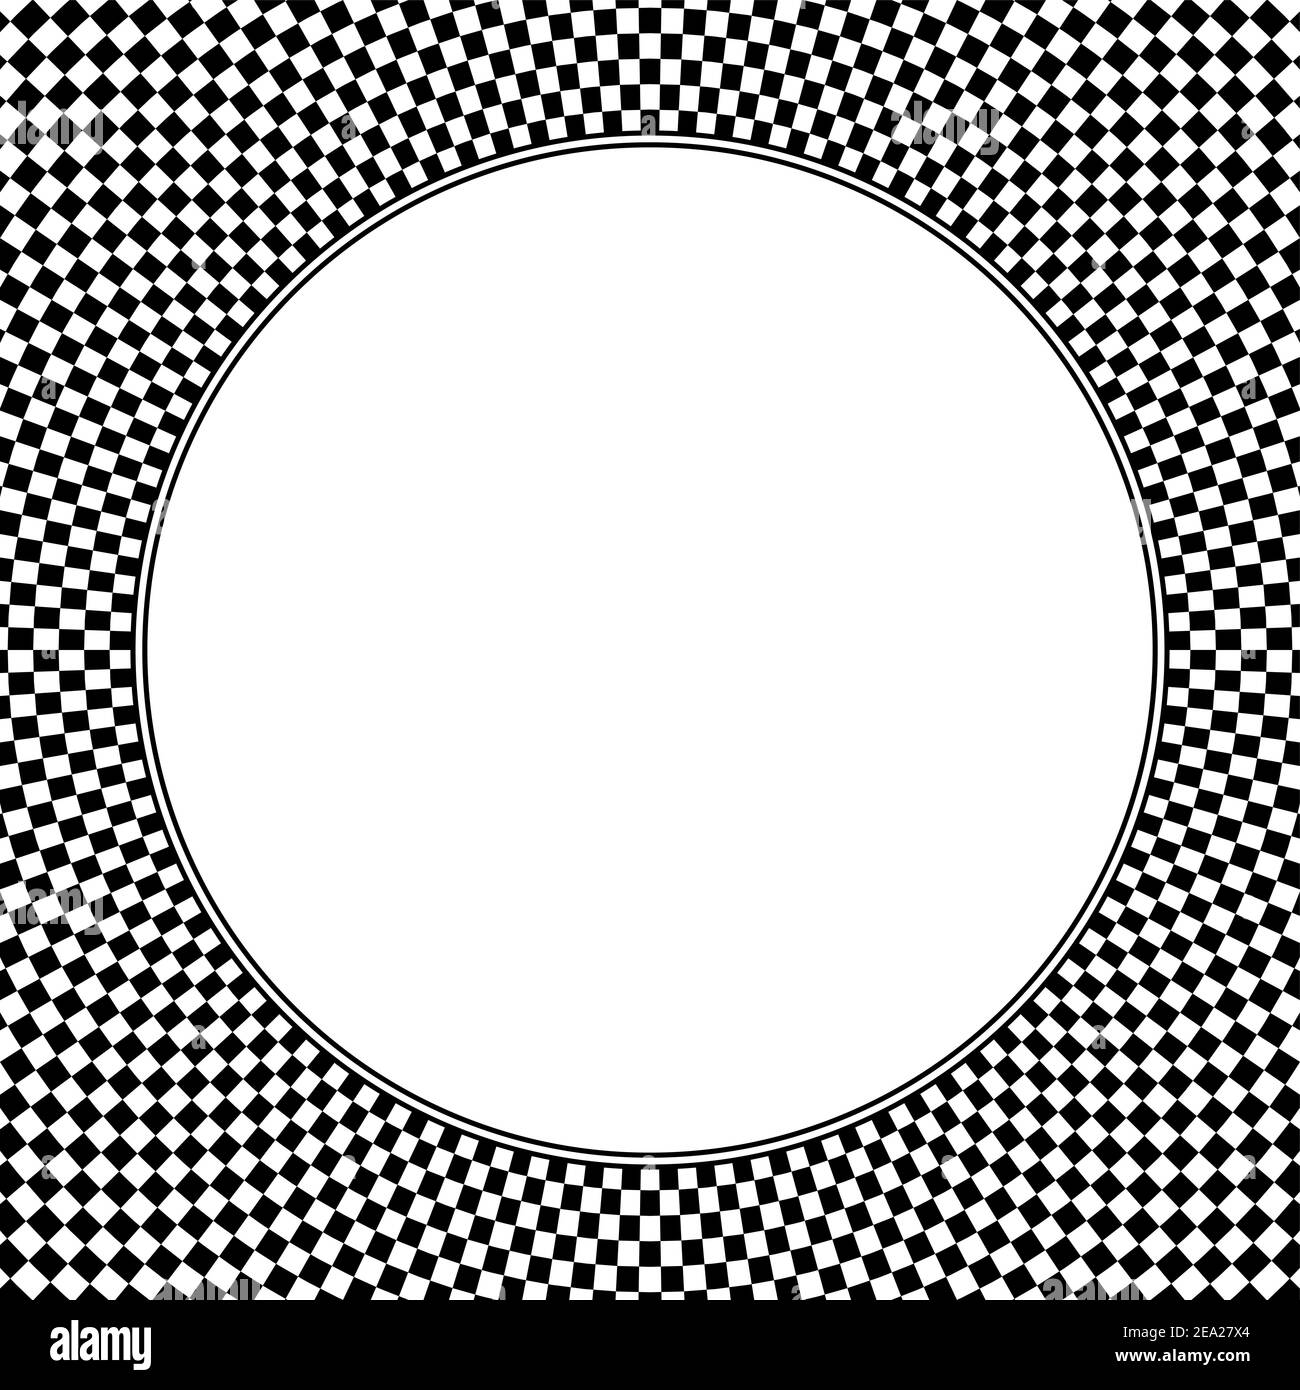 Quadratisch geformte Schachbrettmuster Hintergrund, mit leeren weißen Kreis in der Mitte. Karierte Musterstruktur, aus schwarzen und weißen Quadraten. Stockfoto